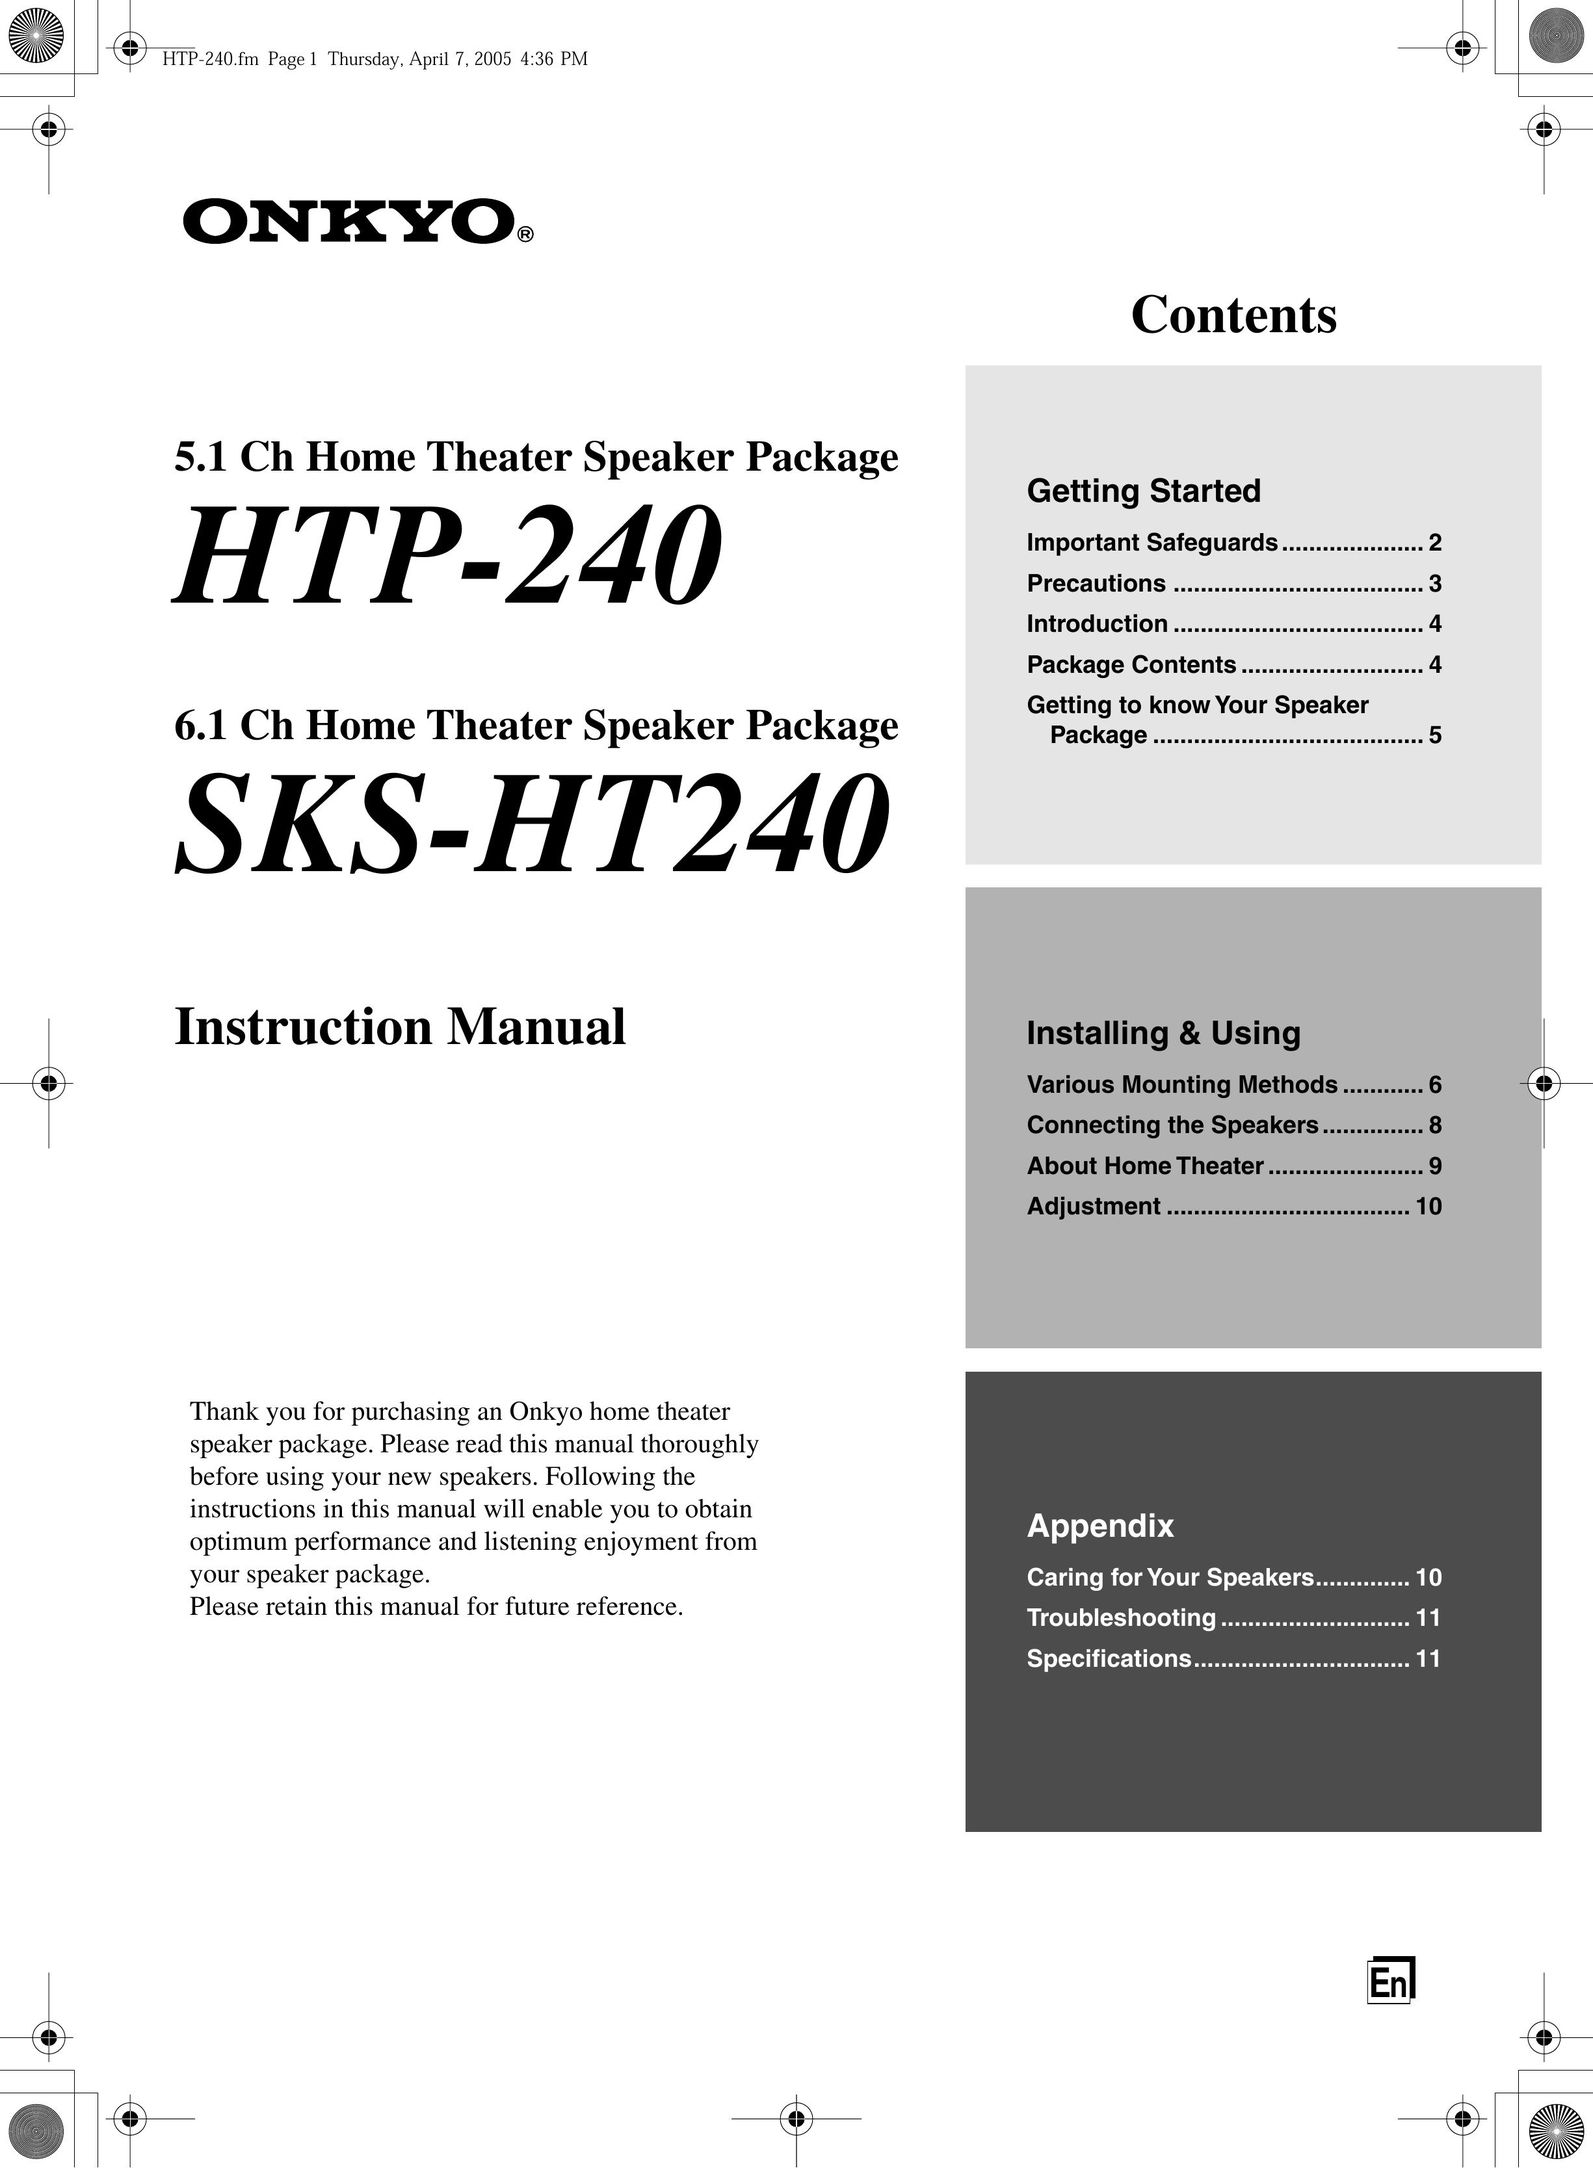 Onkyo SKS-HT240 Speaker User Manual